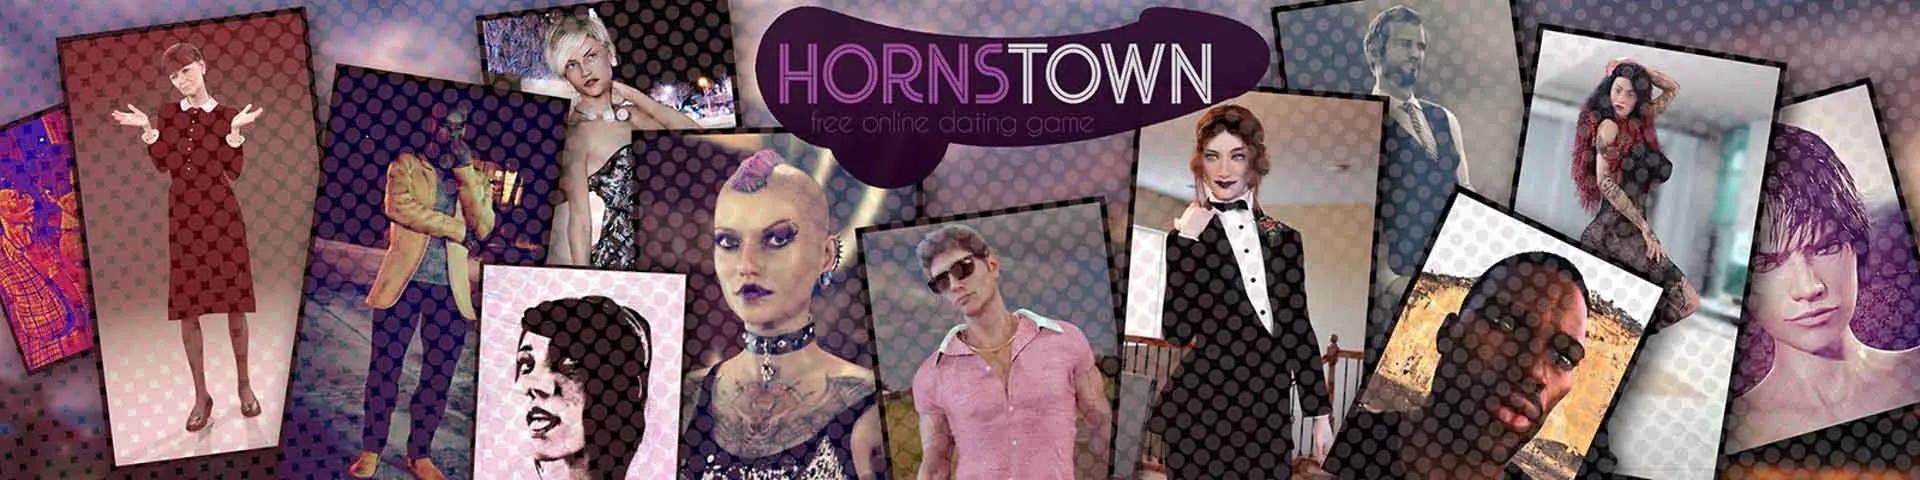 Tiempos difíciles en Hornstown 3d juego sexual, juego porno, juego para adultos